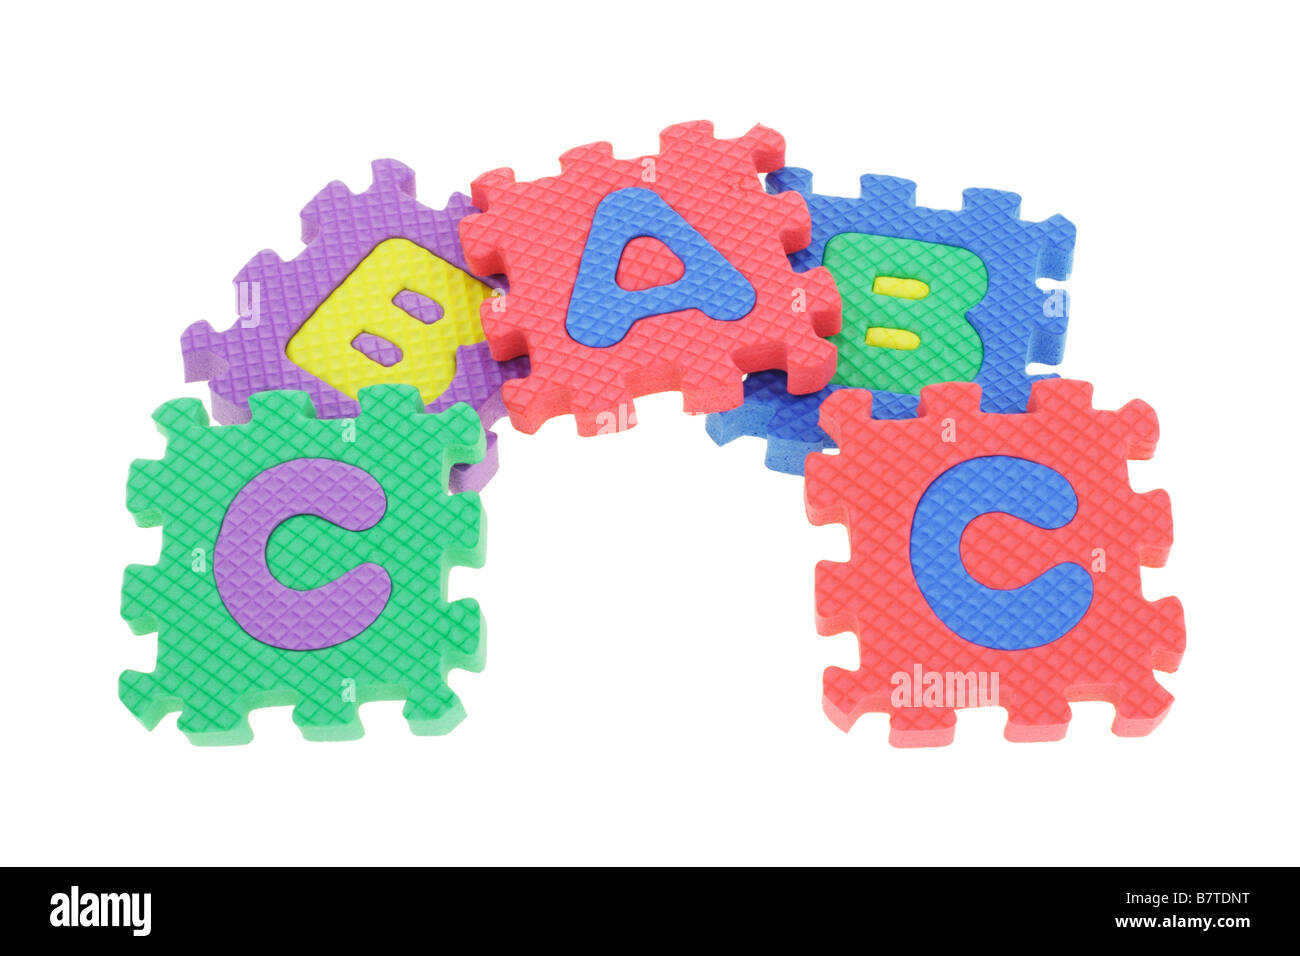 Schaumstoff puzzle Buchstaben groß in Würfelform auf einem weißen  Hintergrund Stockfotografie - Alamy